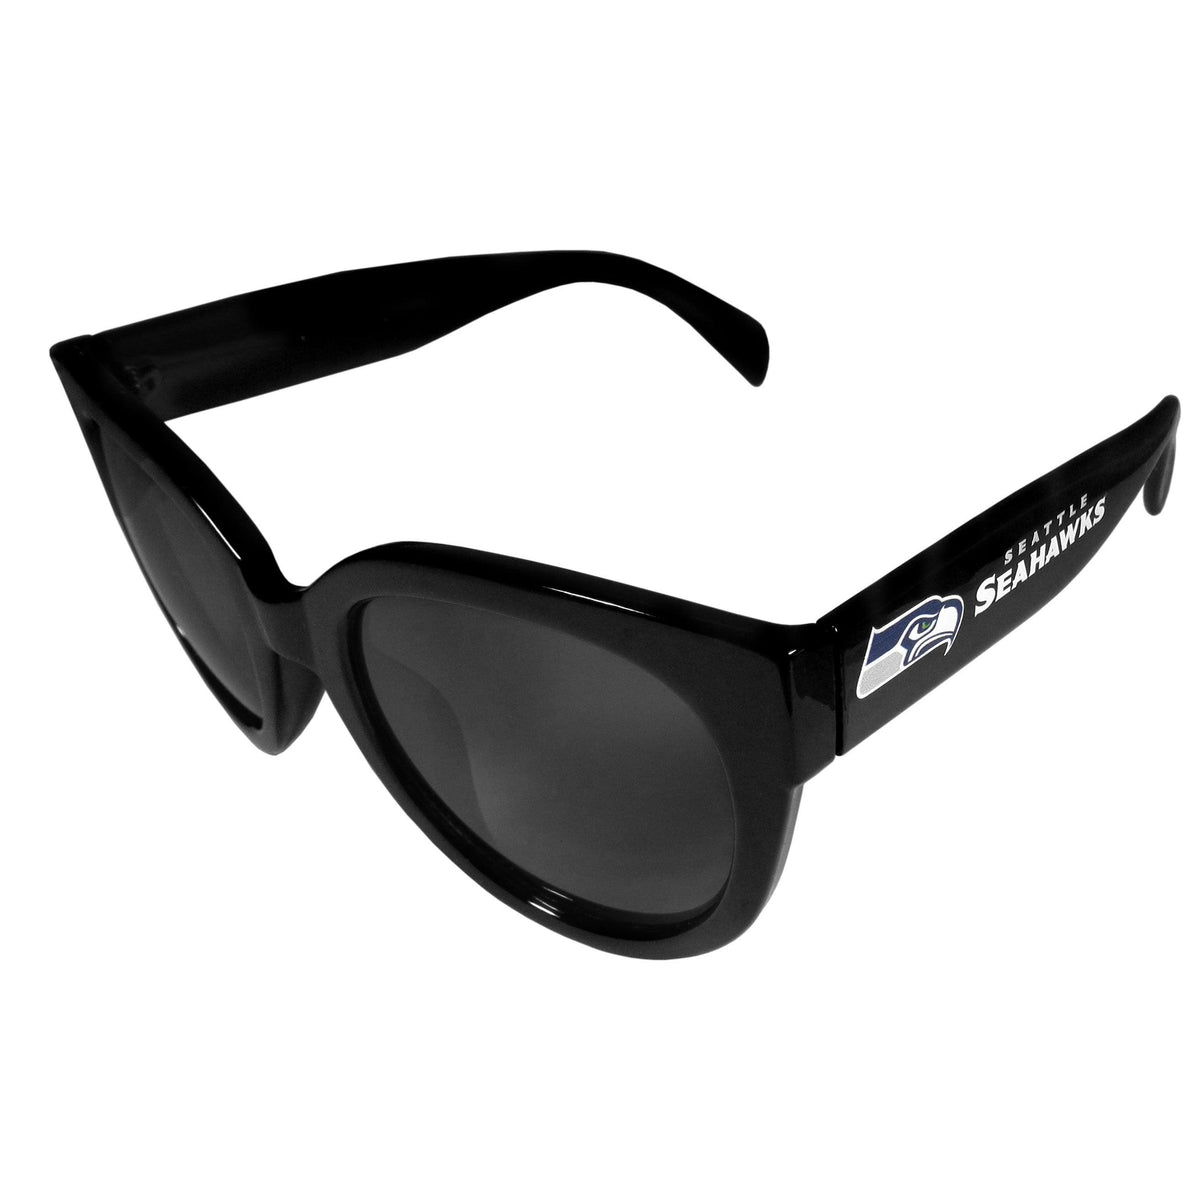 Seattle Seahawks Women's Sunglasses - Flyclothing LLC